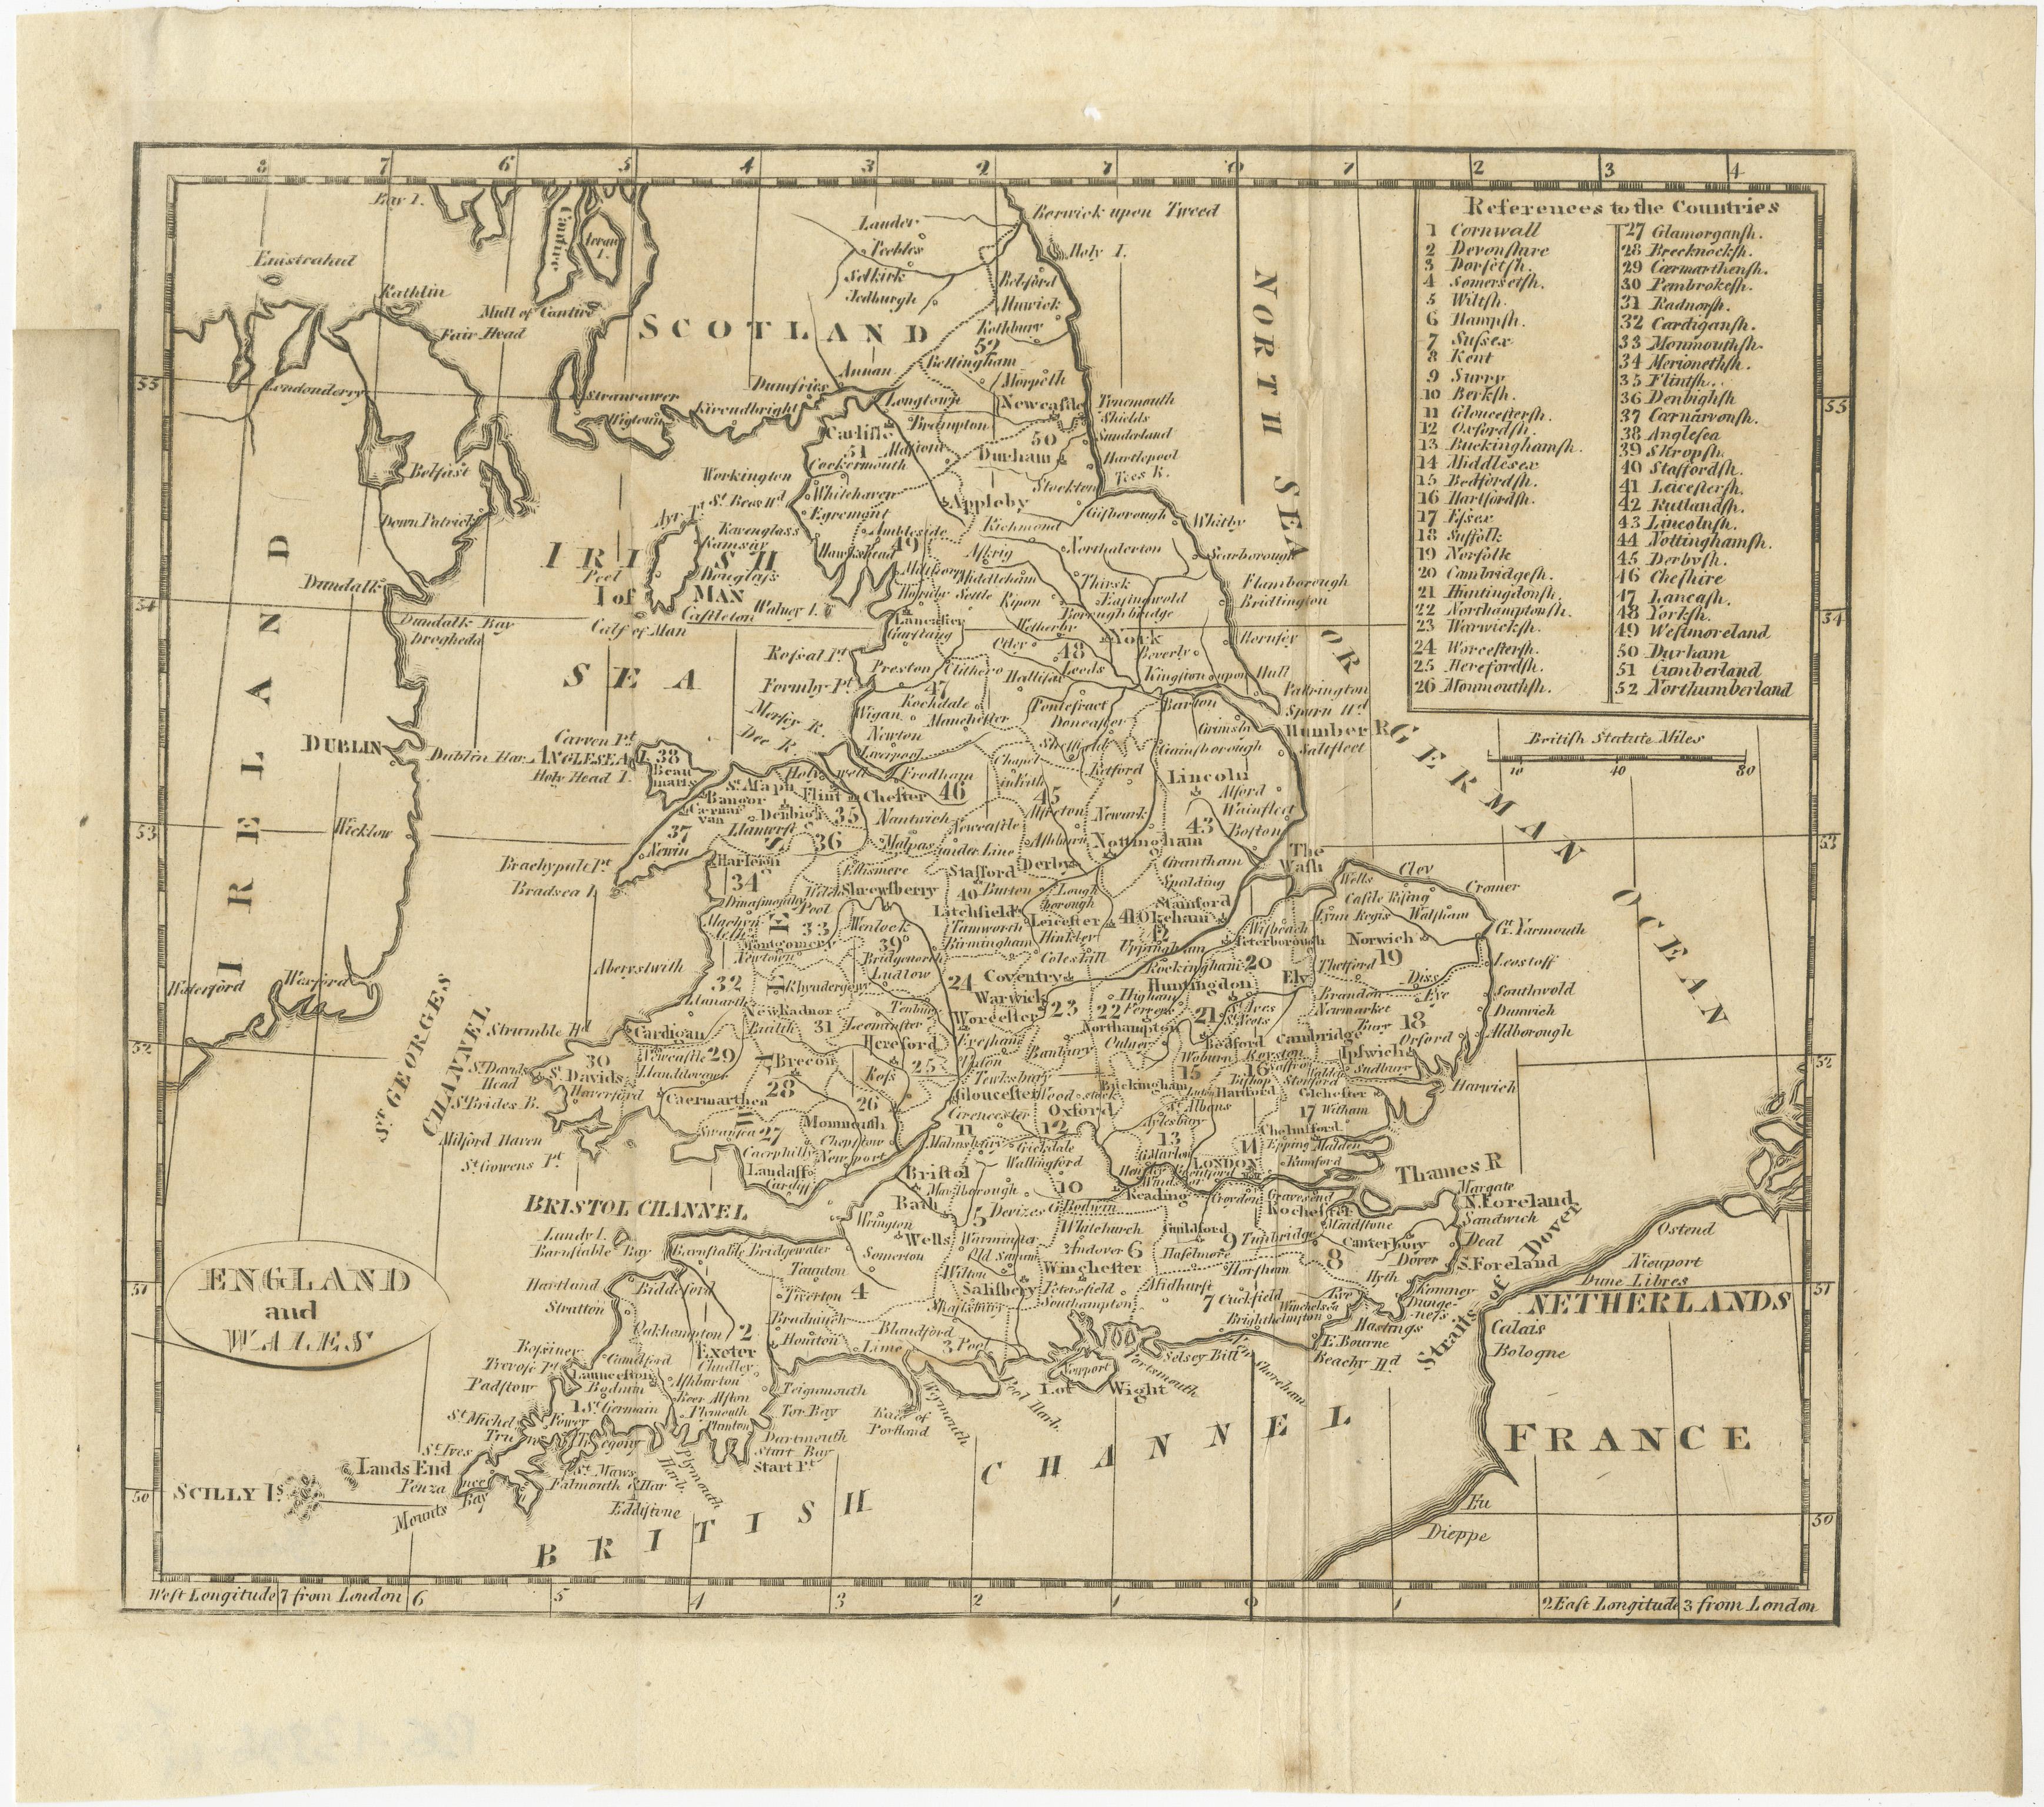 Antike Karte mit dem Titel 'England und Wales'. Originale antike Karte von England und Wales, mit Hinweisen auf die Grafschaften. Quelle unbekannt, muss noch ermittelt werden. Veröffentlicht um 1820.